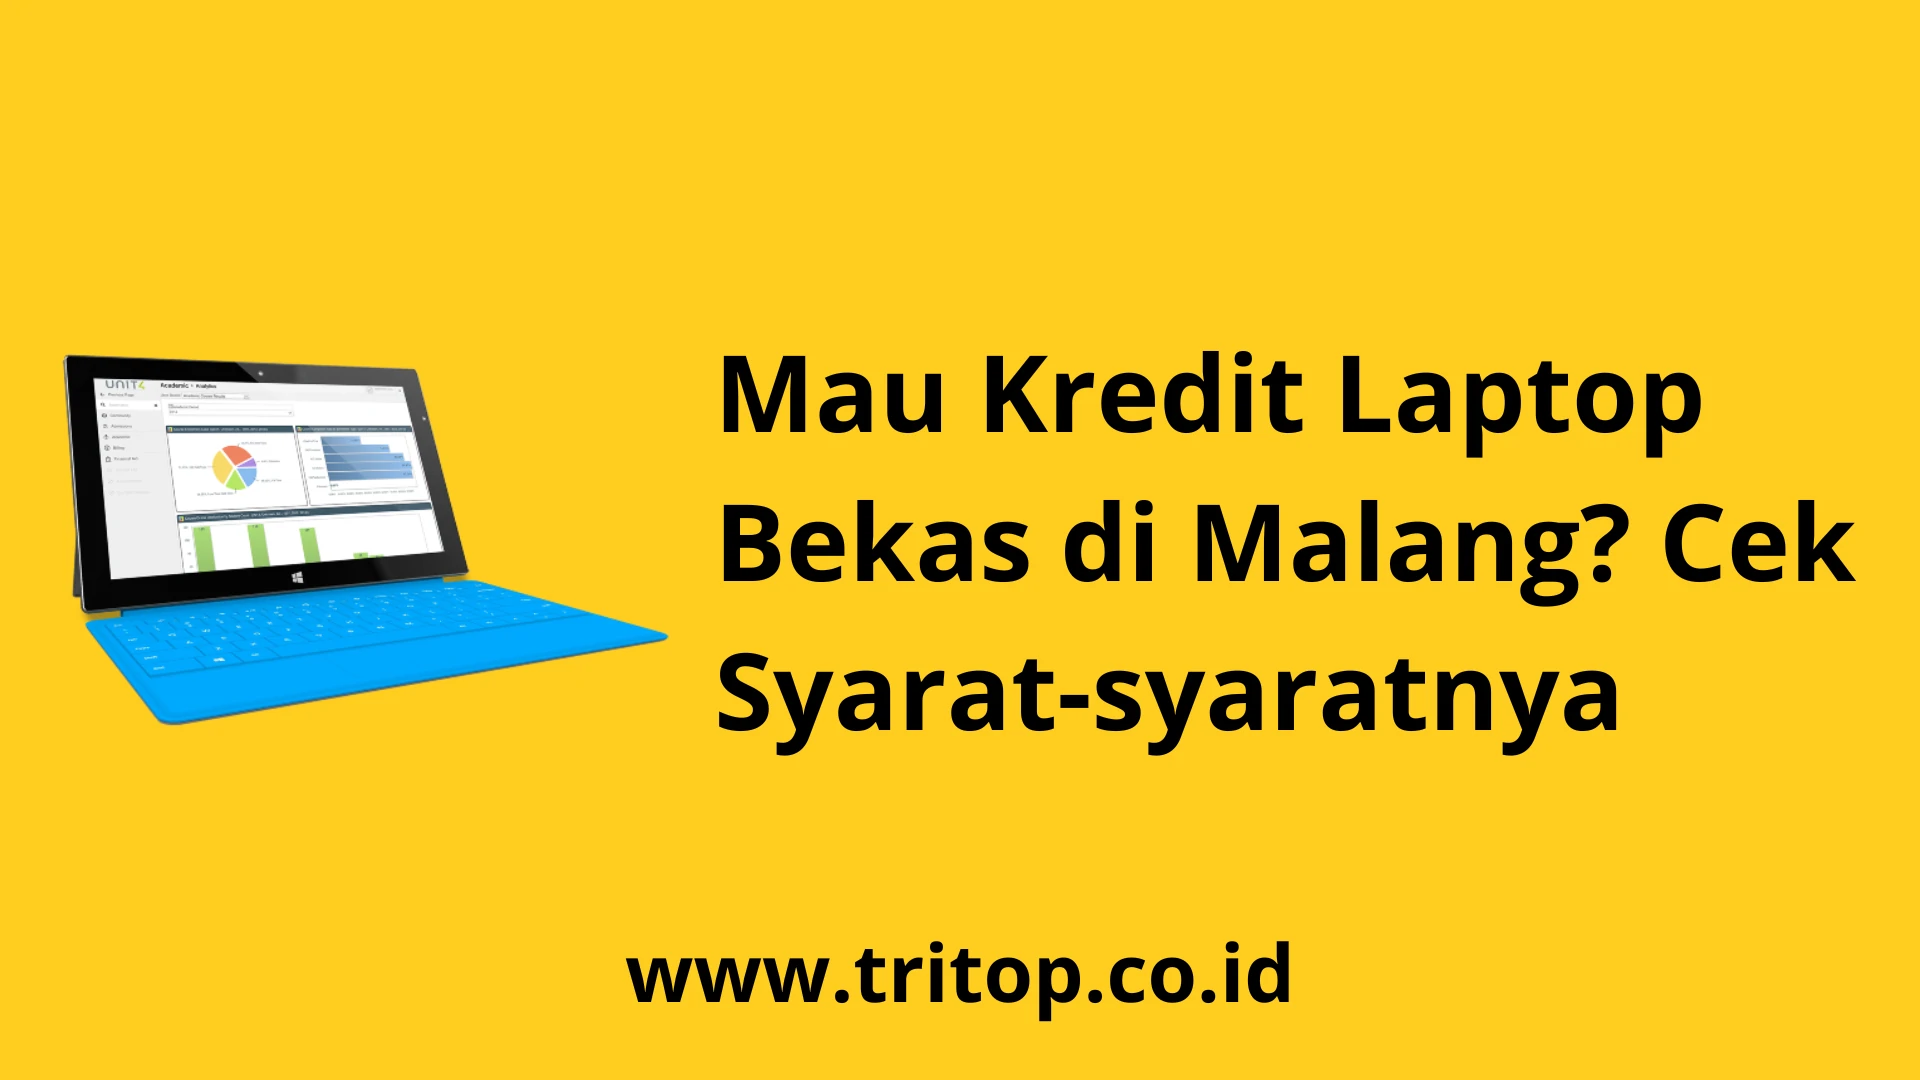 Kredit Laptop Bekas Malang www.tritop.co.id